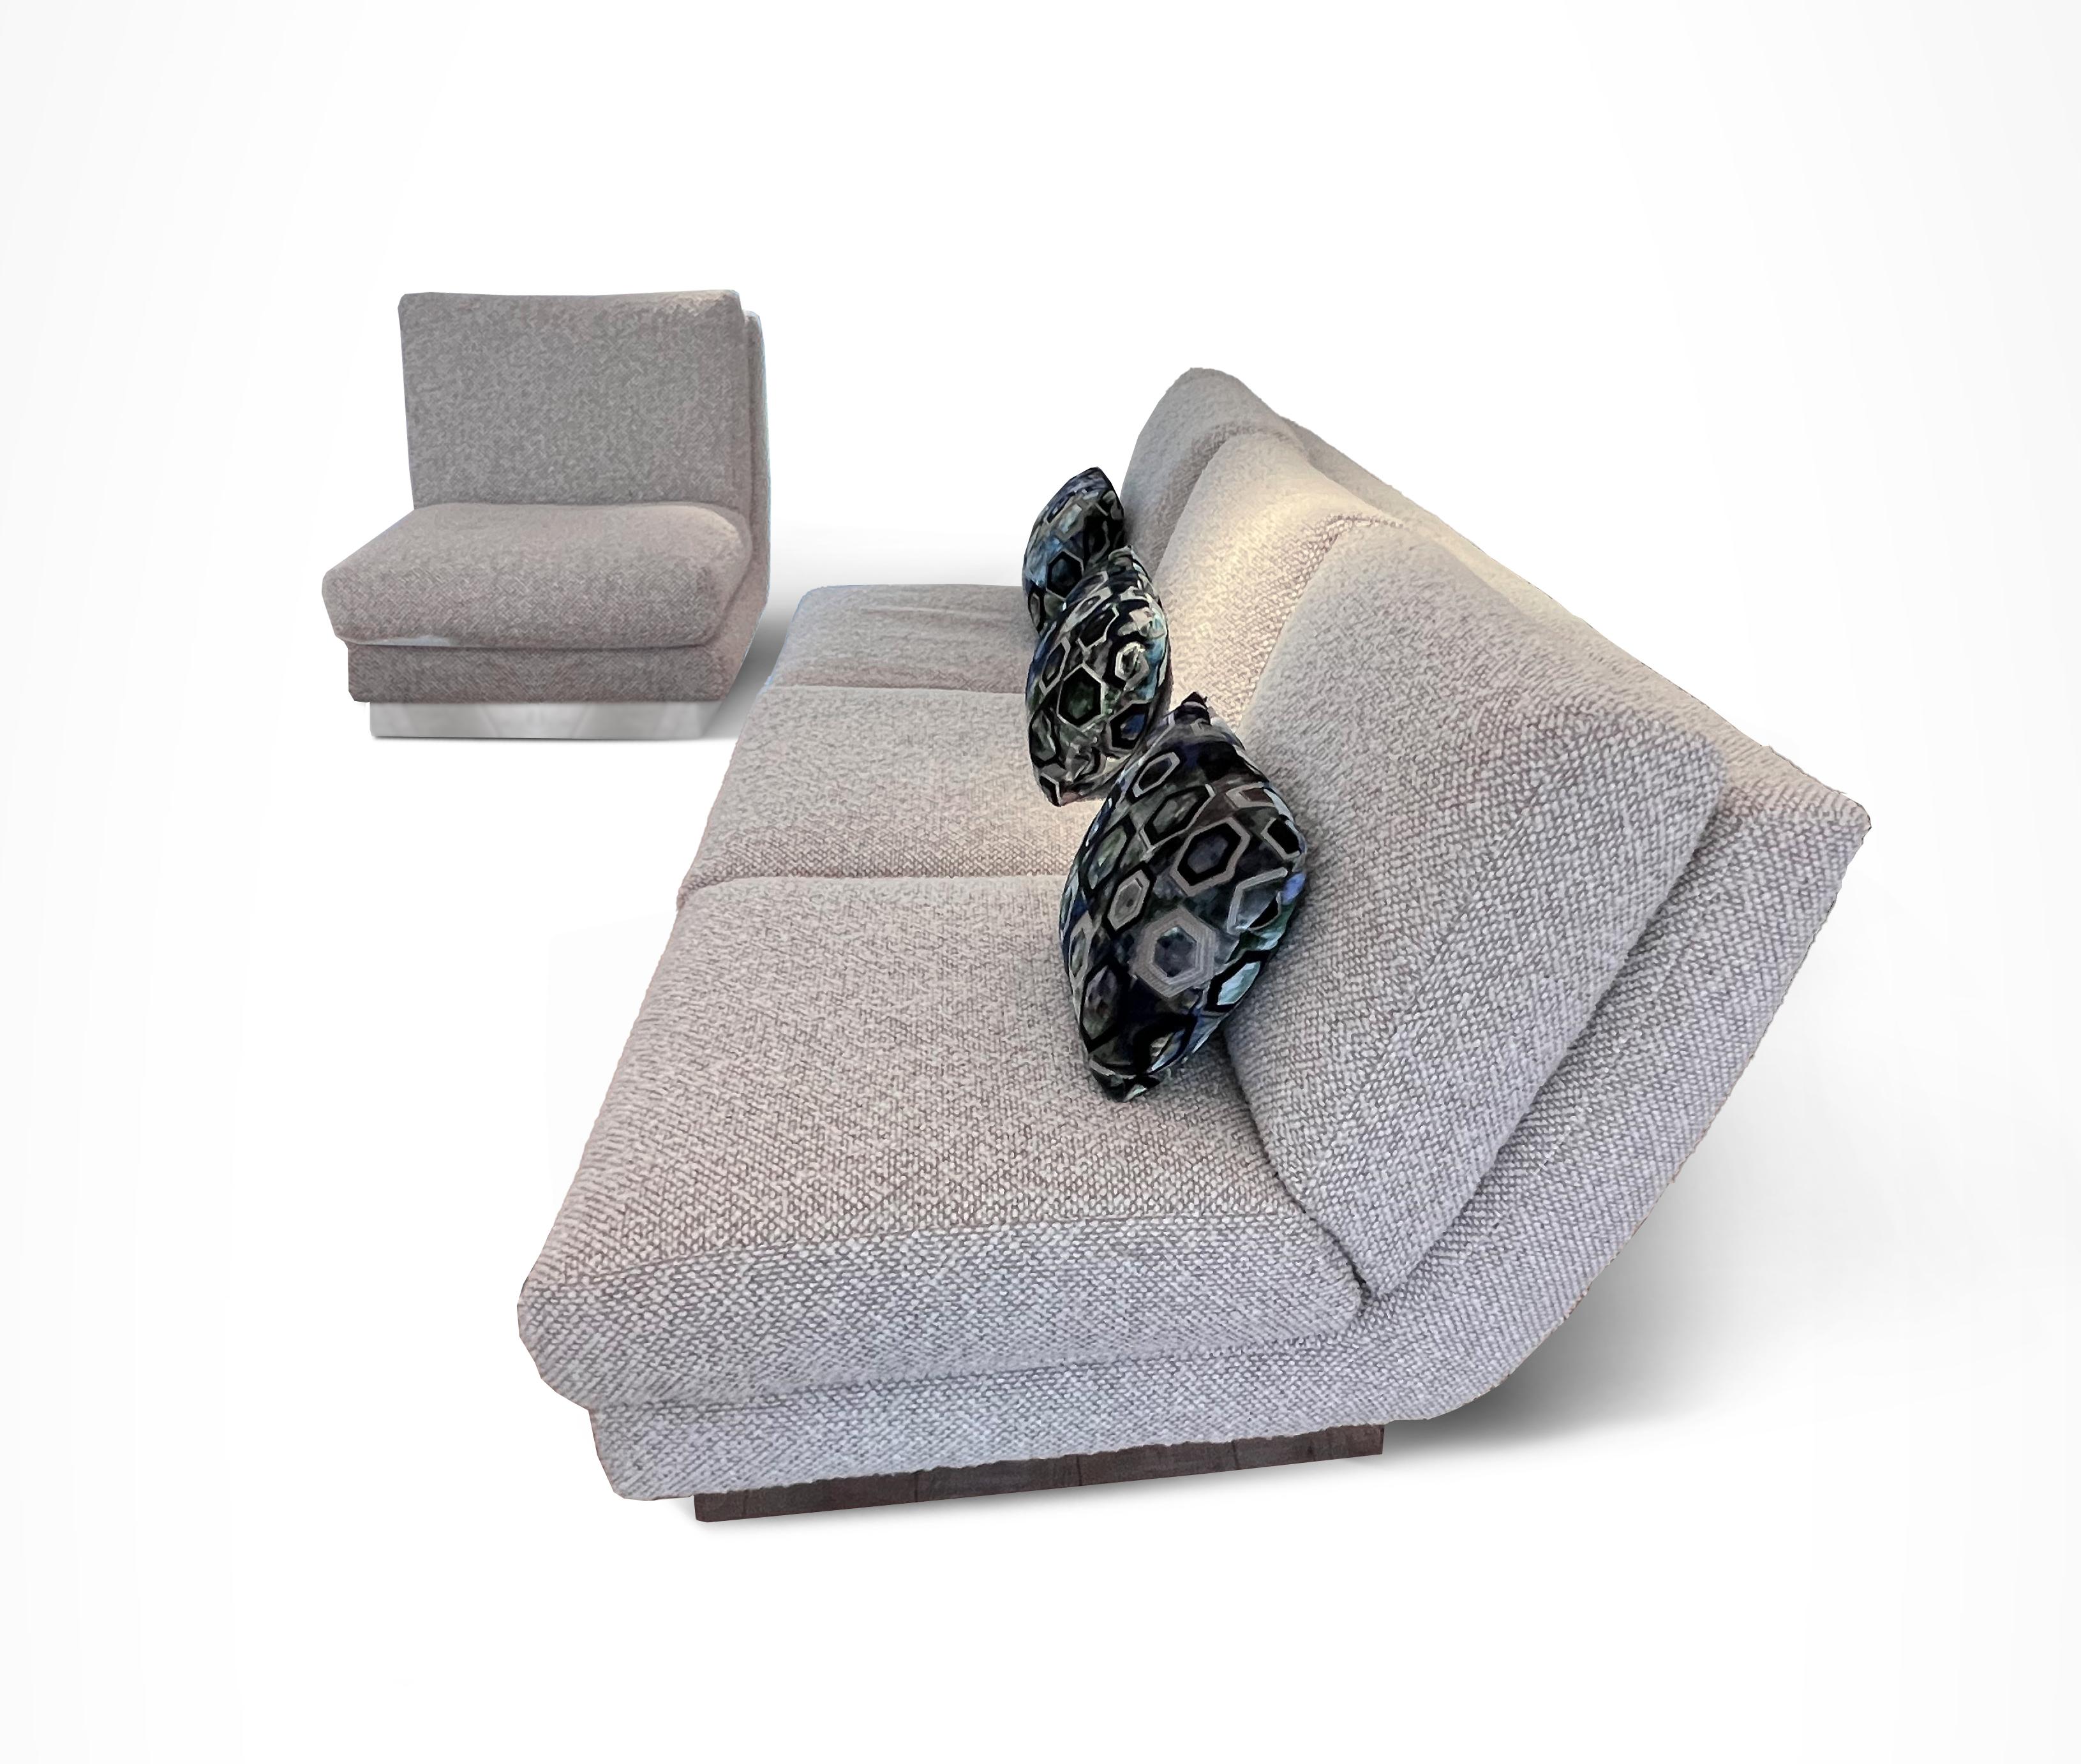 Un canapé 3 places exceptionnellement confortable avec 2 chaises d'accompagnement, sur des socles revêtus d'acier inoxydable. Recouvert de tissu bouclé moka et crème.

Canapé : H 80 / L 218 / P 107 cm
Chaque chaise : H 80 / L 72 / P 107